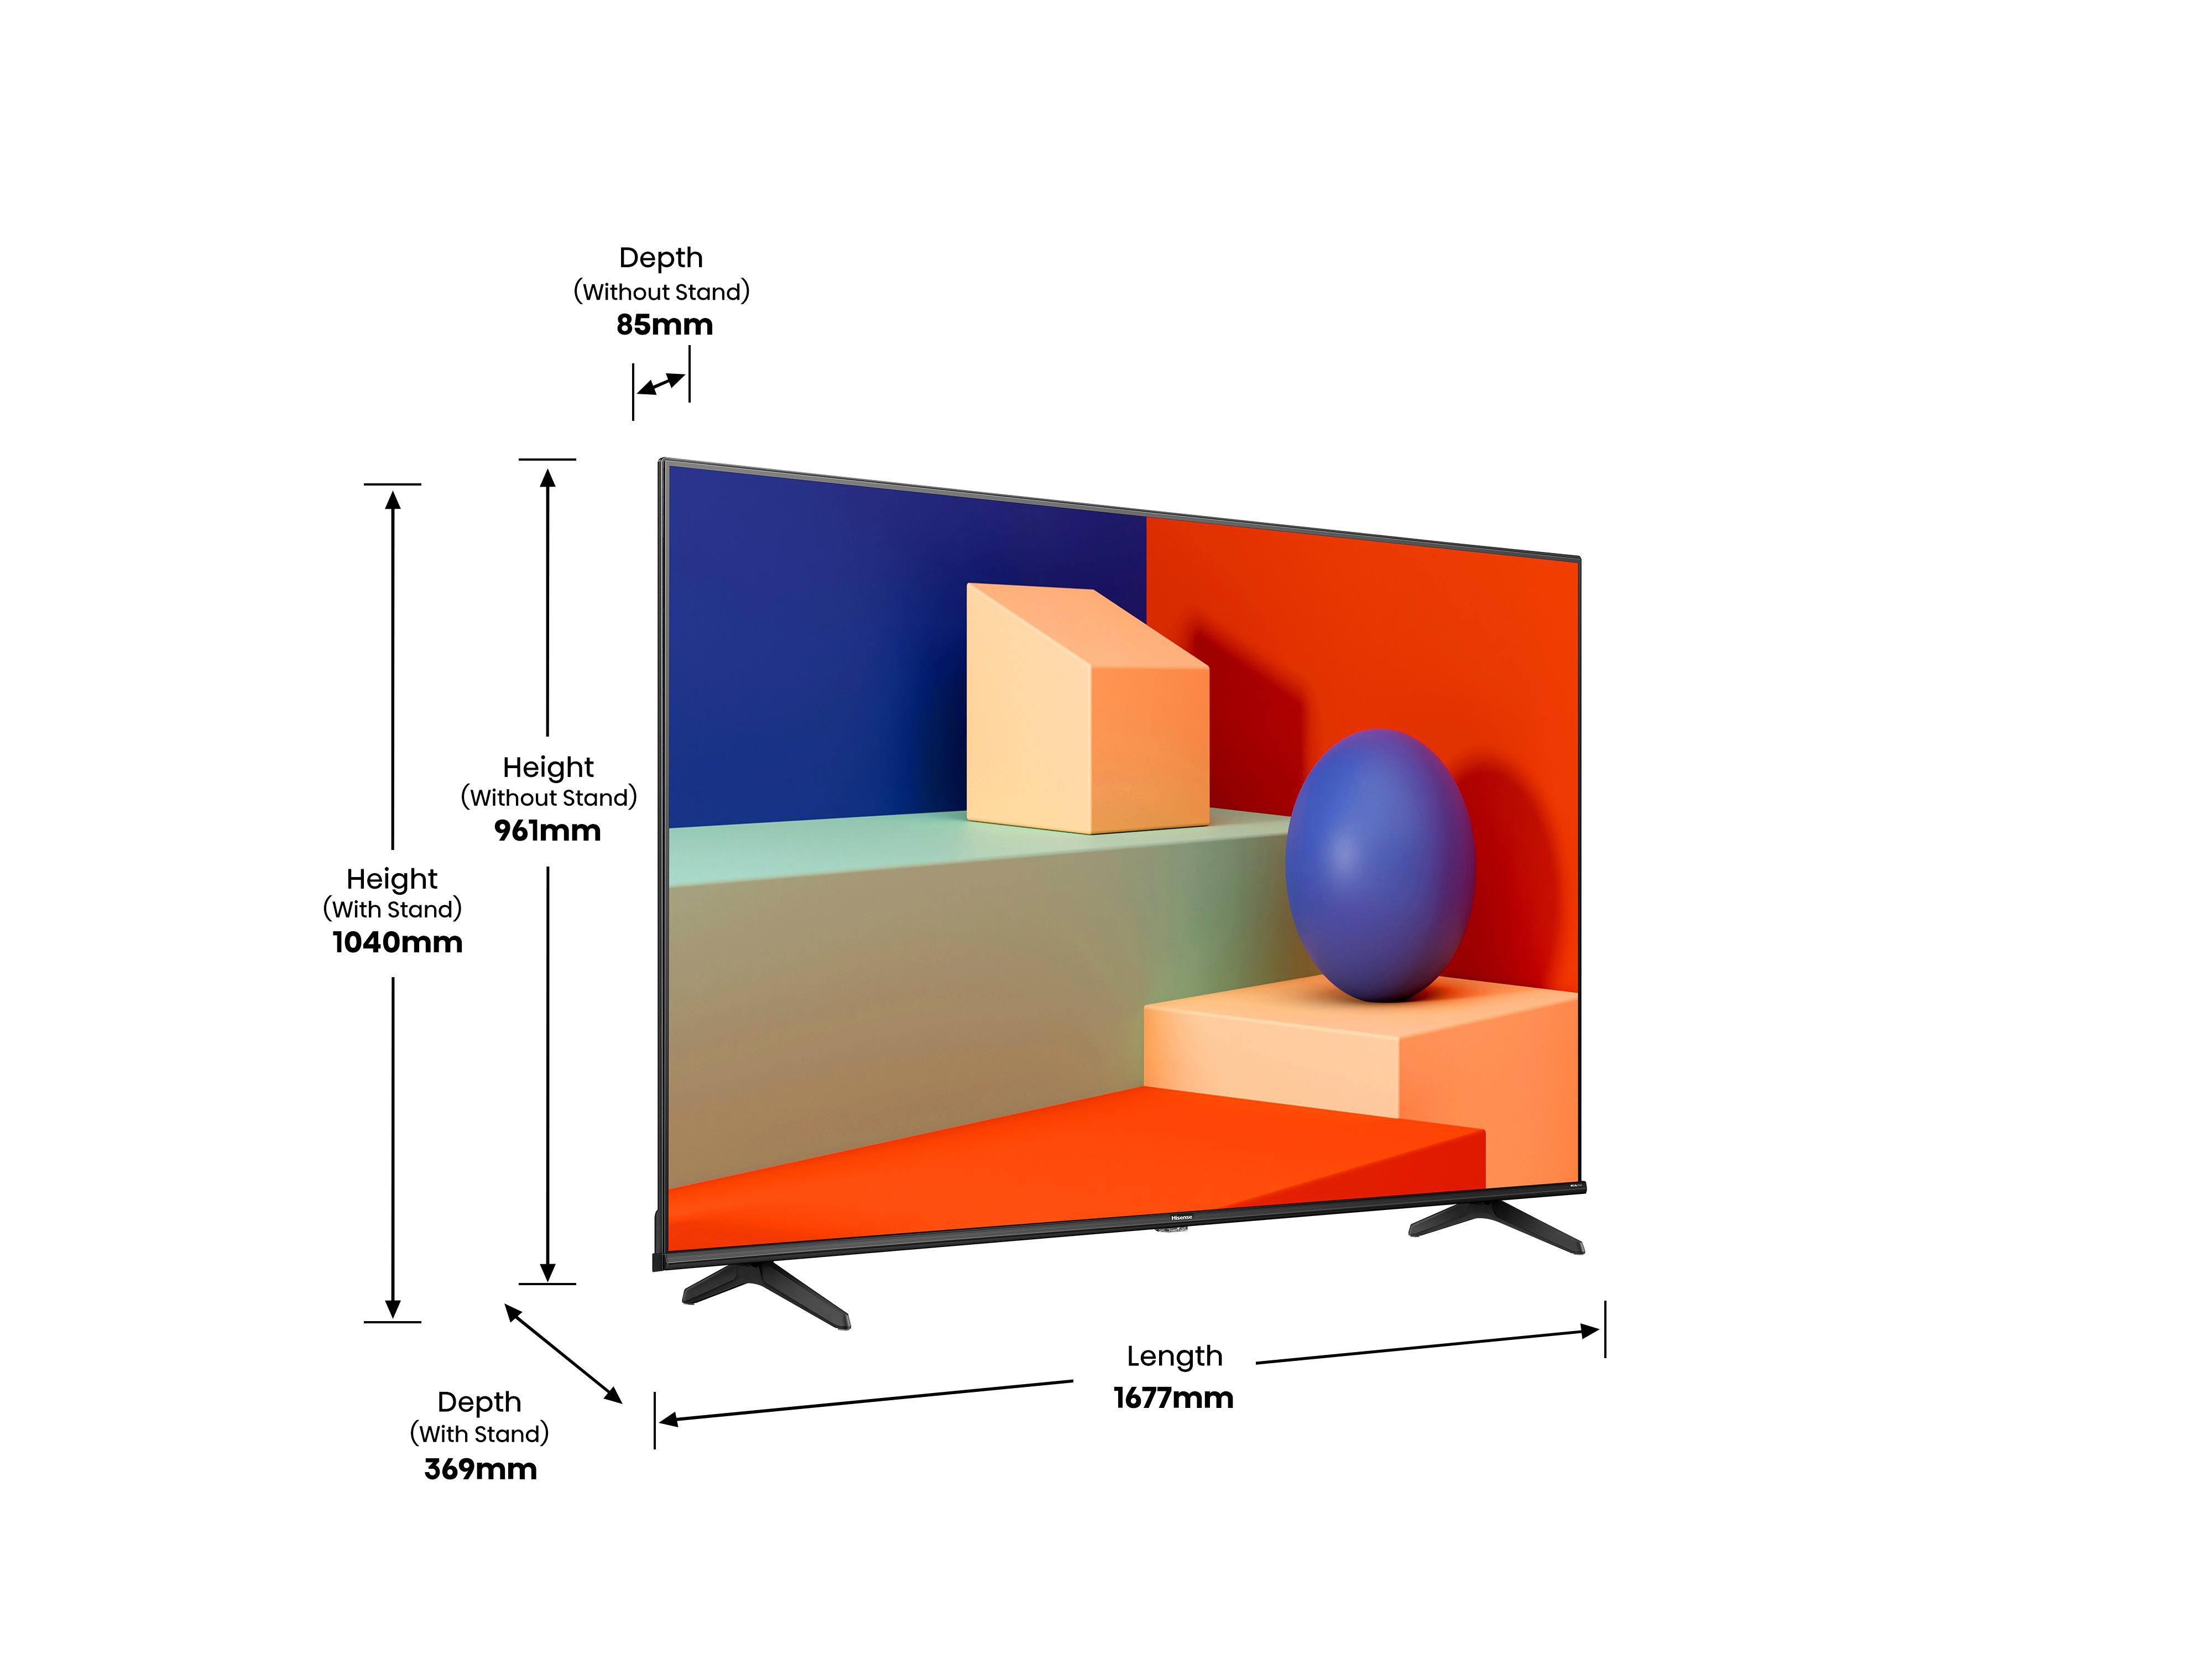 HISENSE 75A6K LED (Flat, 189 75 cm, TV, 4K, / UHD VIDAA) SMART TV Zoll